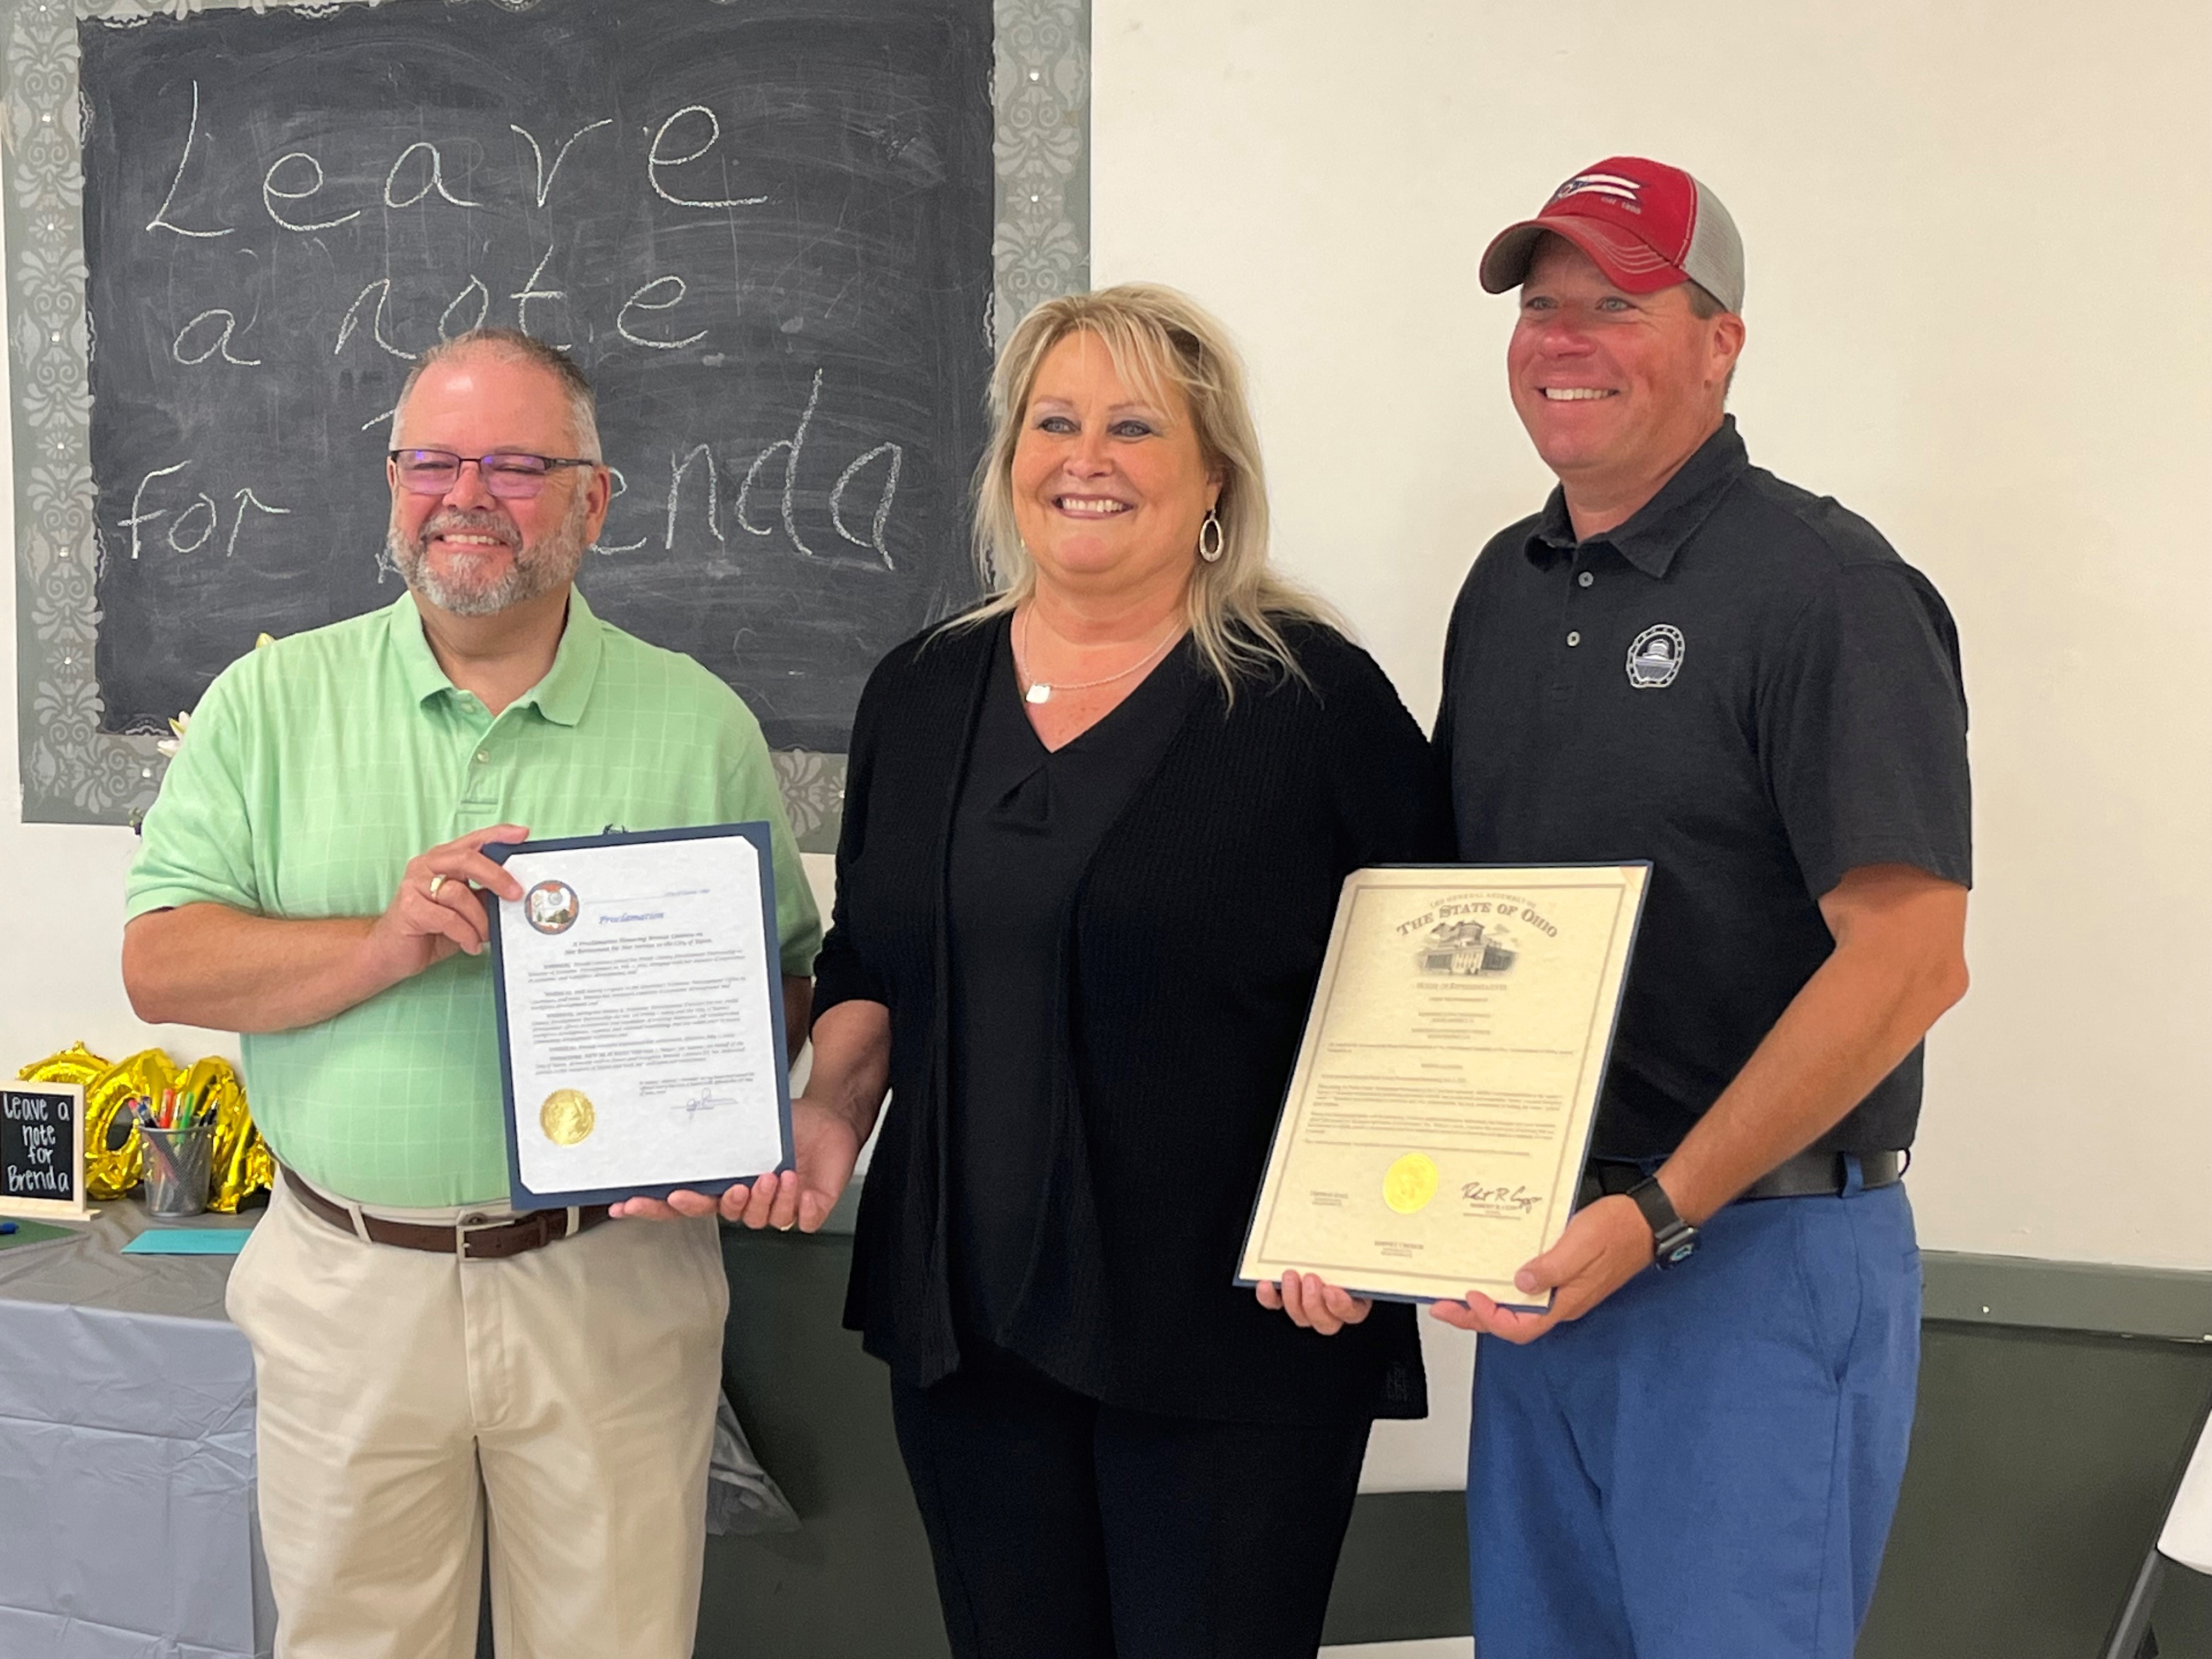 Brenda Latanza recognized for service to city, county | Eaton, Ohio